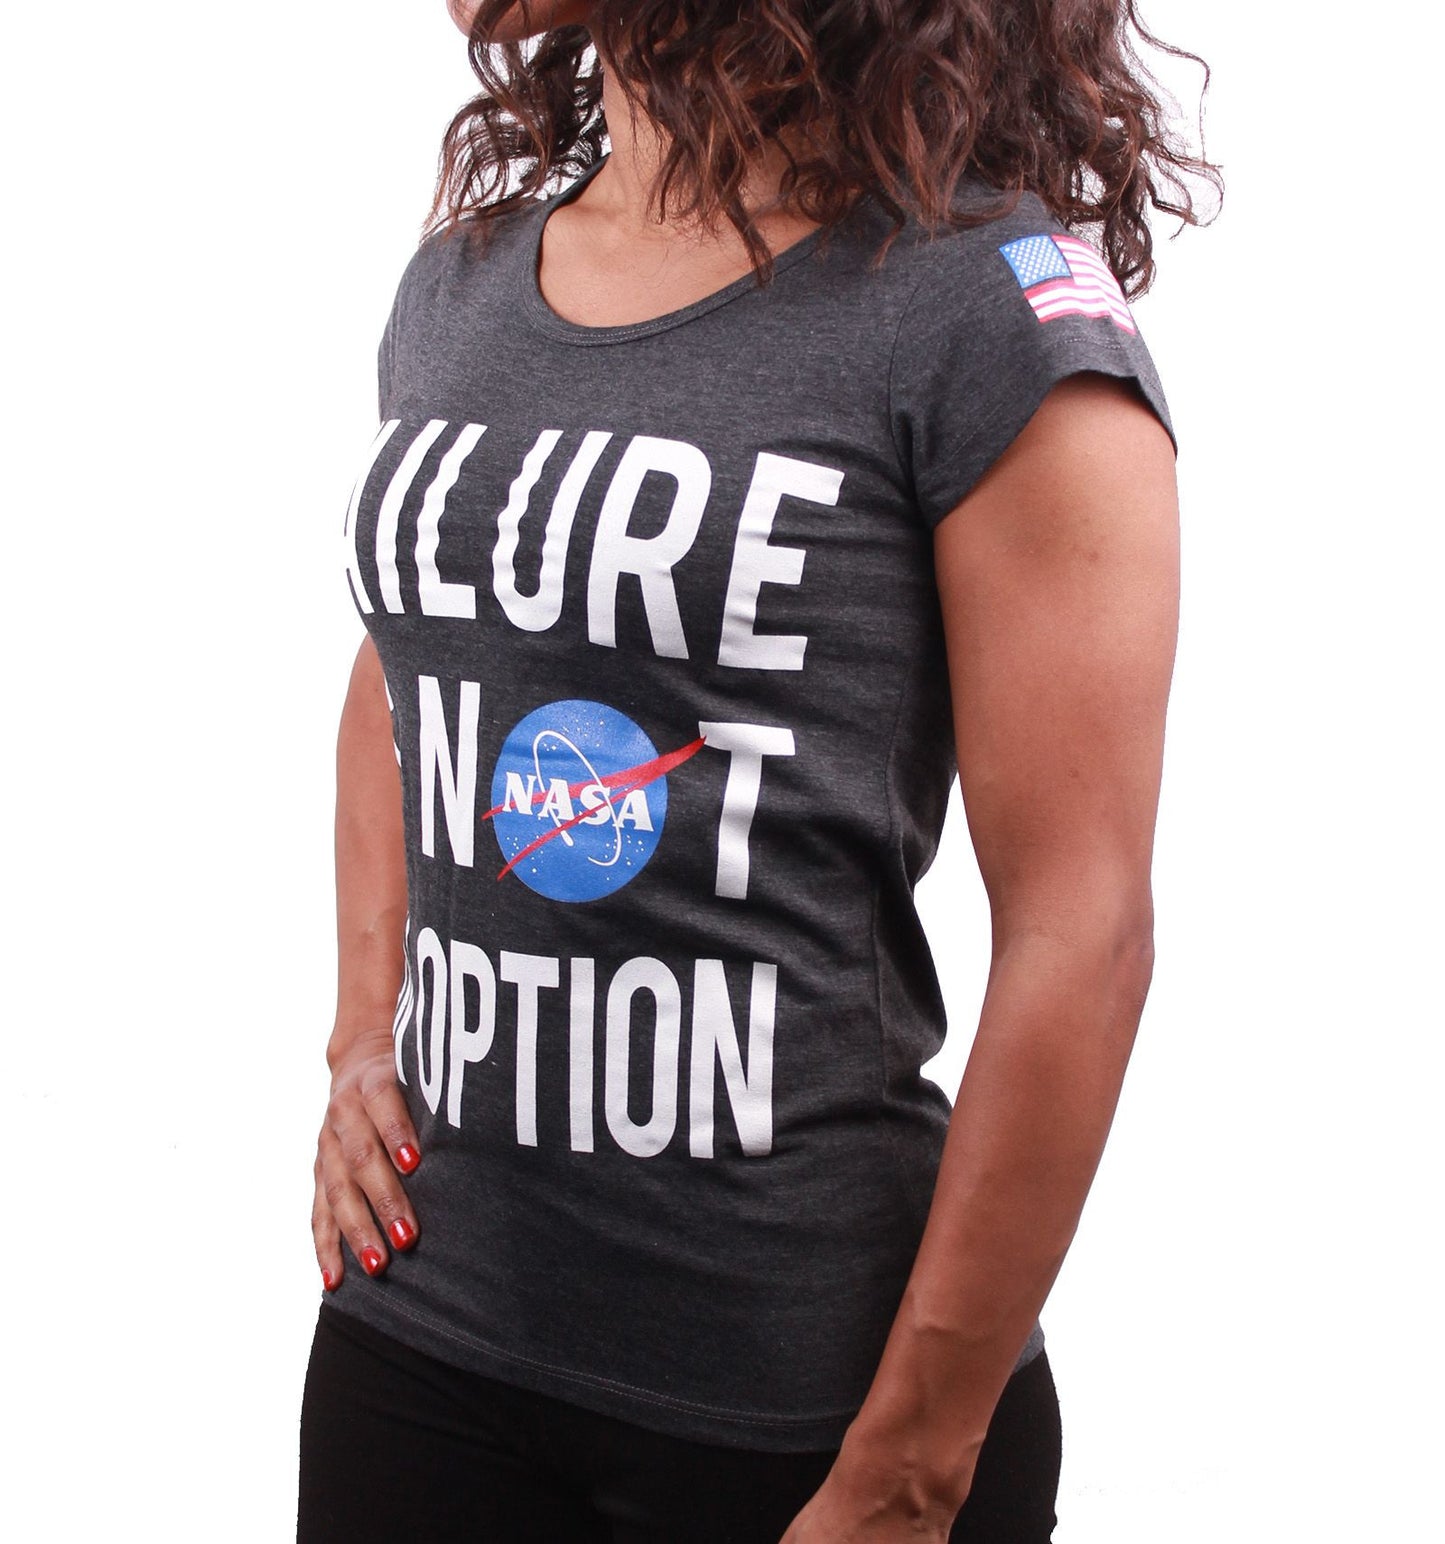 NASA Women's T-shirt - Failure Is Not an Option